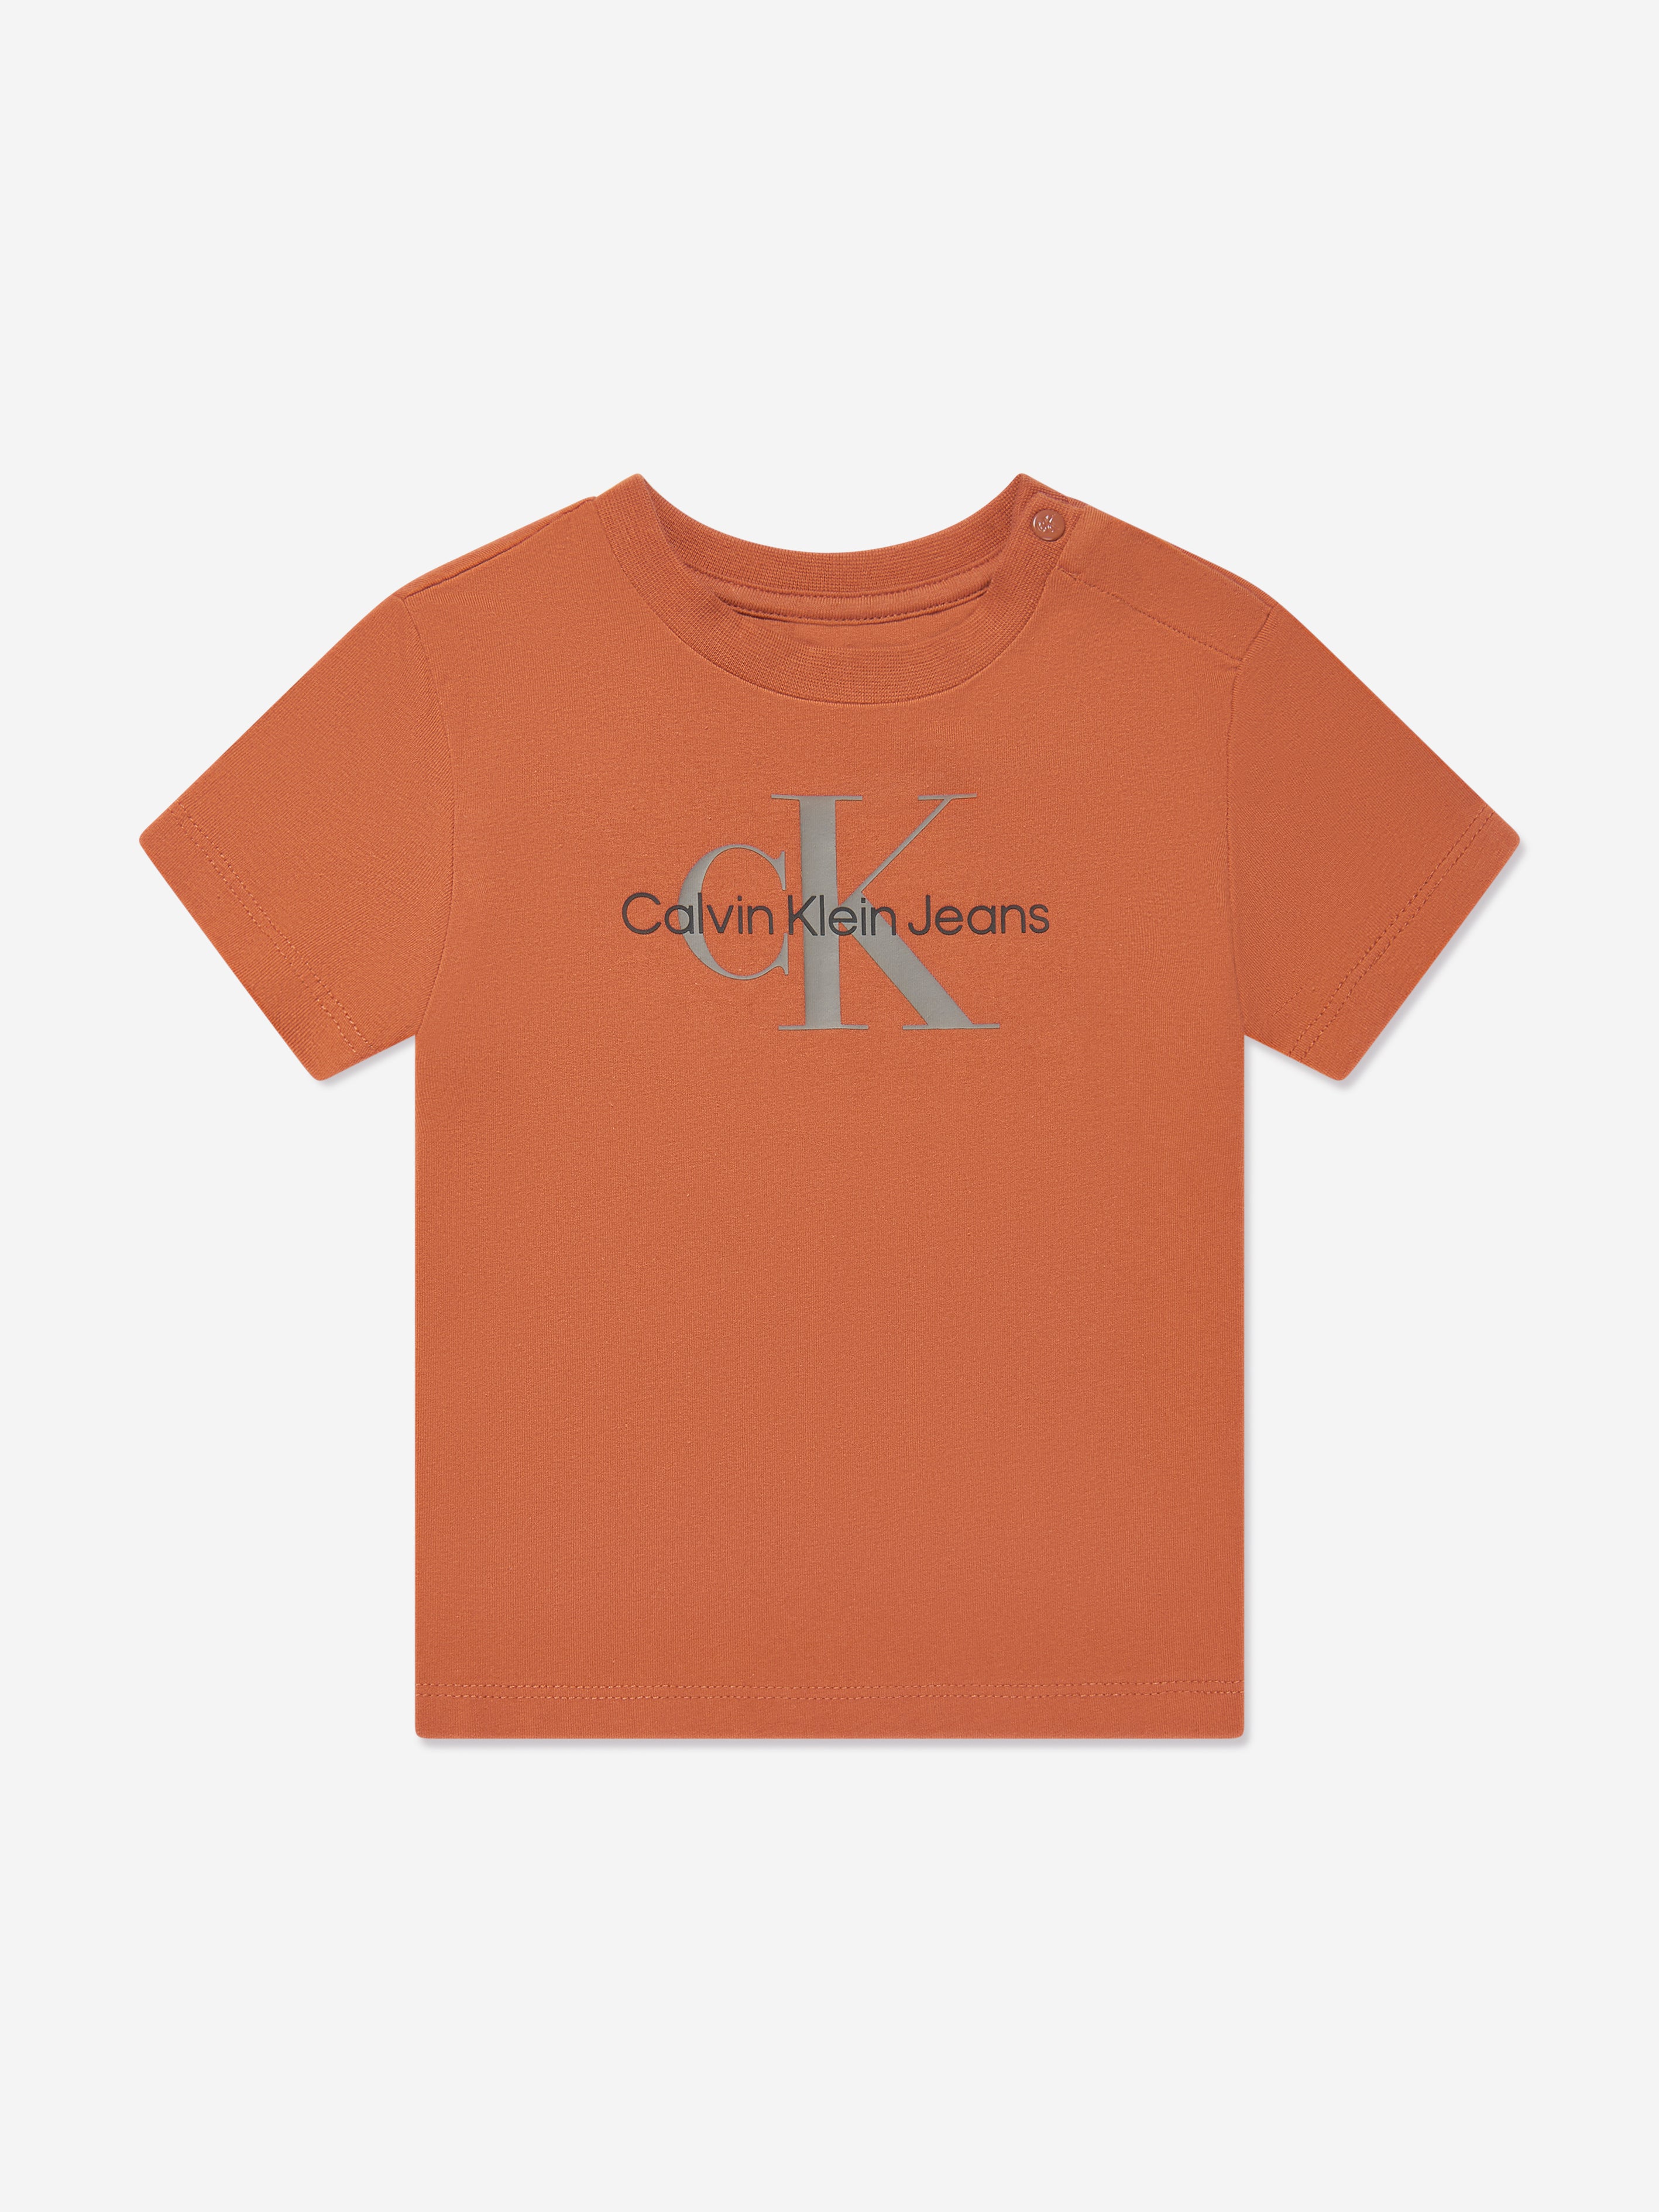 Baby Monogram T-Shirt in Auburn